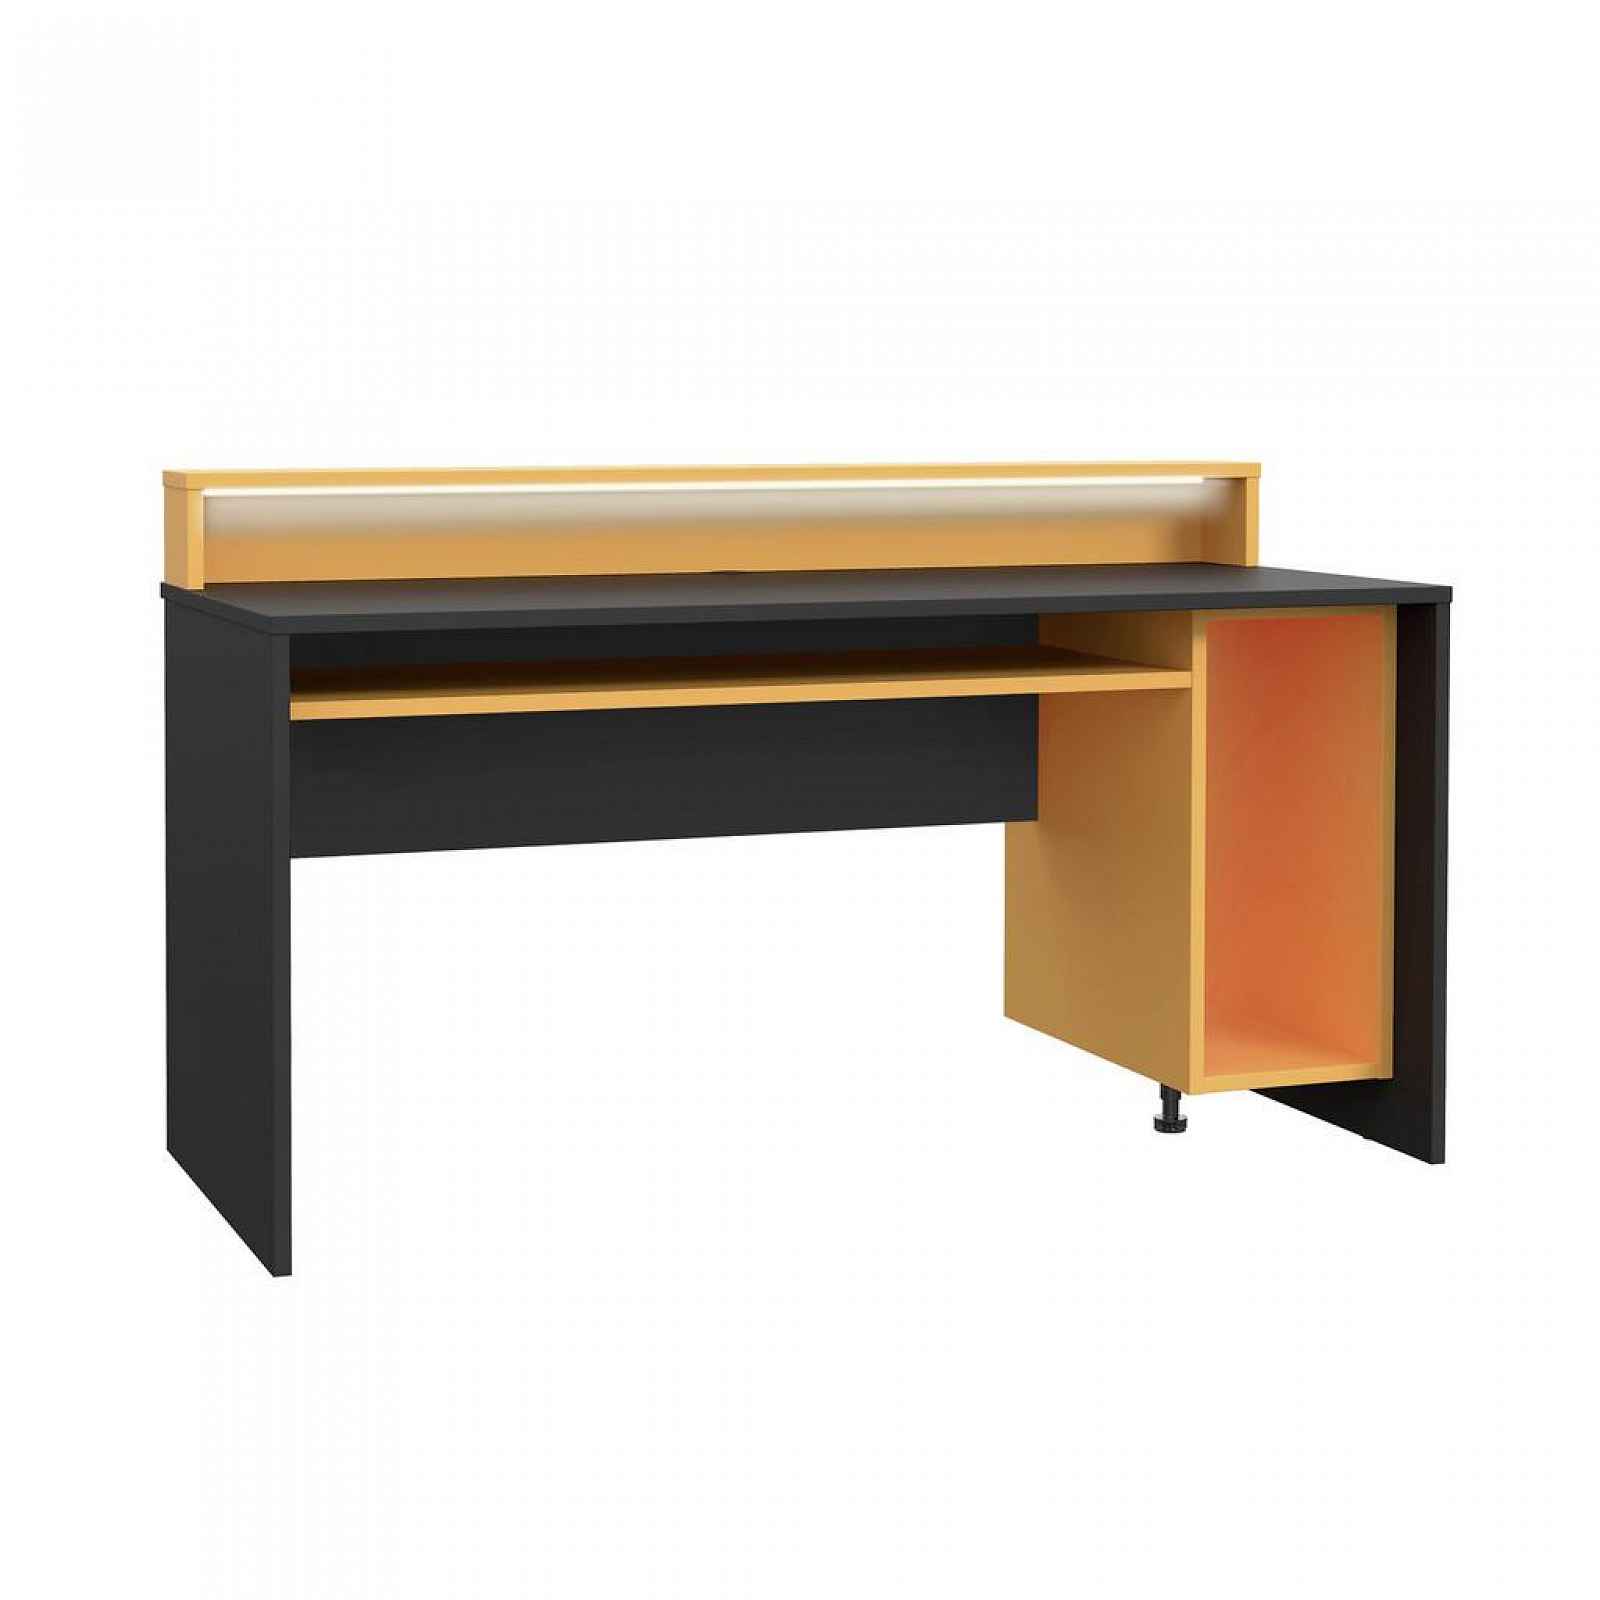 Herní stůl Tezaur Oranžová/černá Tezaur Š:160cm